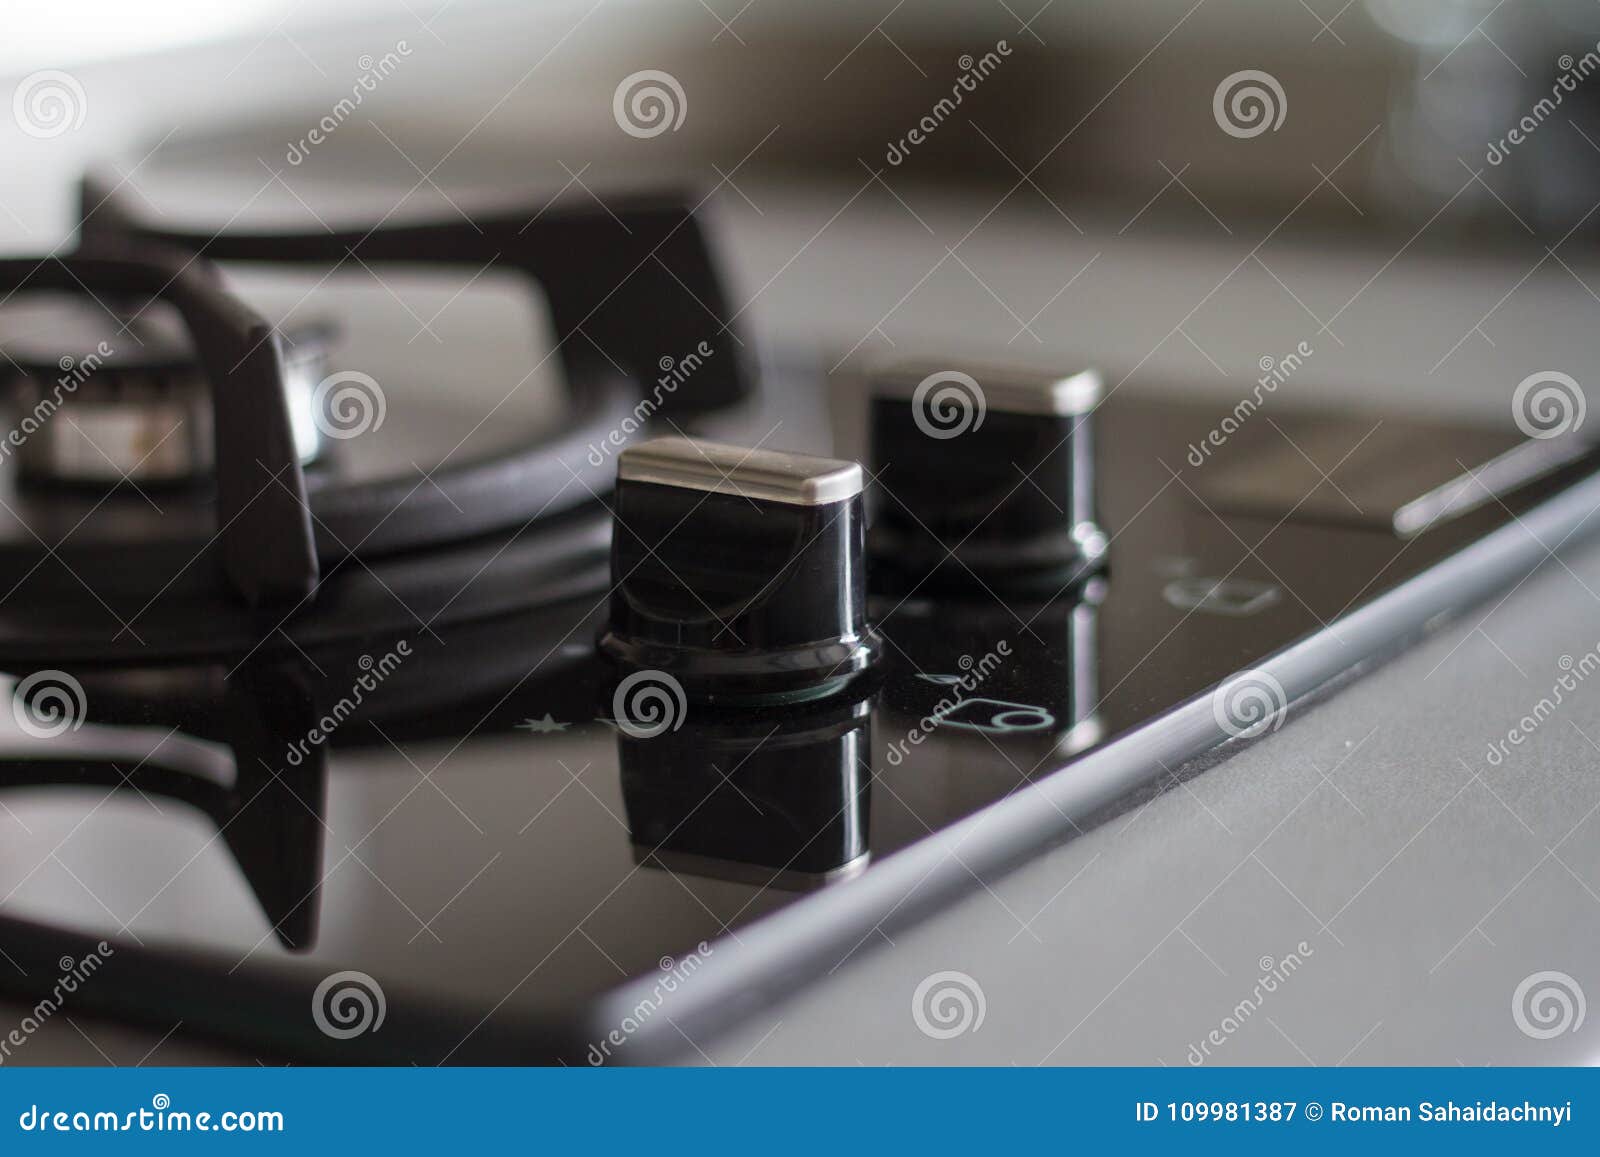 Détail de fraise-mère de gaz d'acier inoxydable sur le plan de travail en pierre noir, plan rapproché, petite et grande, surface réfléchie du brûleur deux élégant noir mat Focuse sélecteur